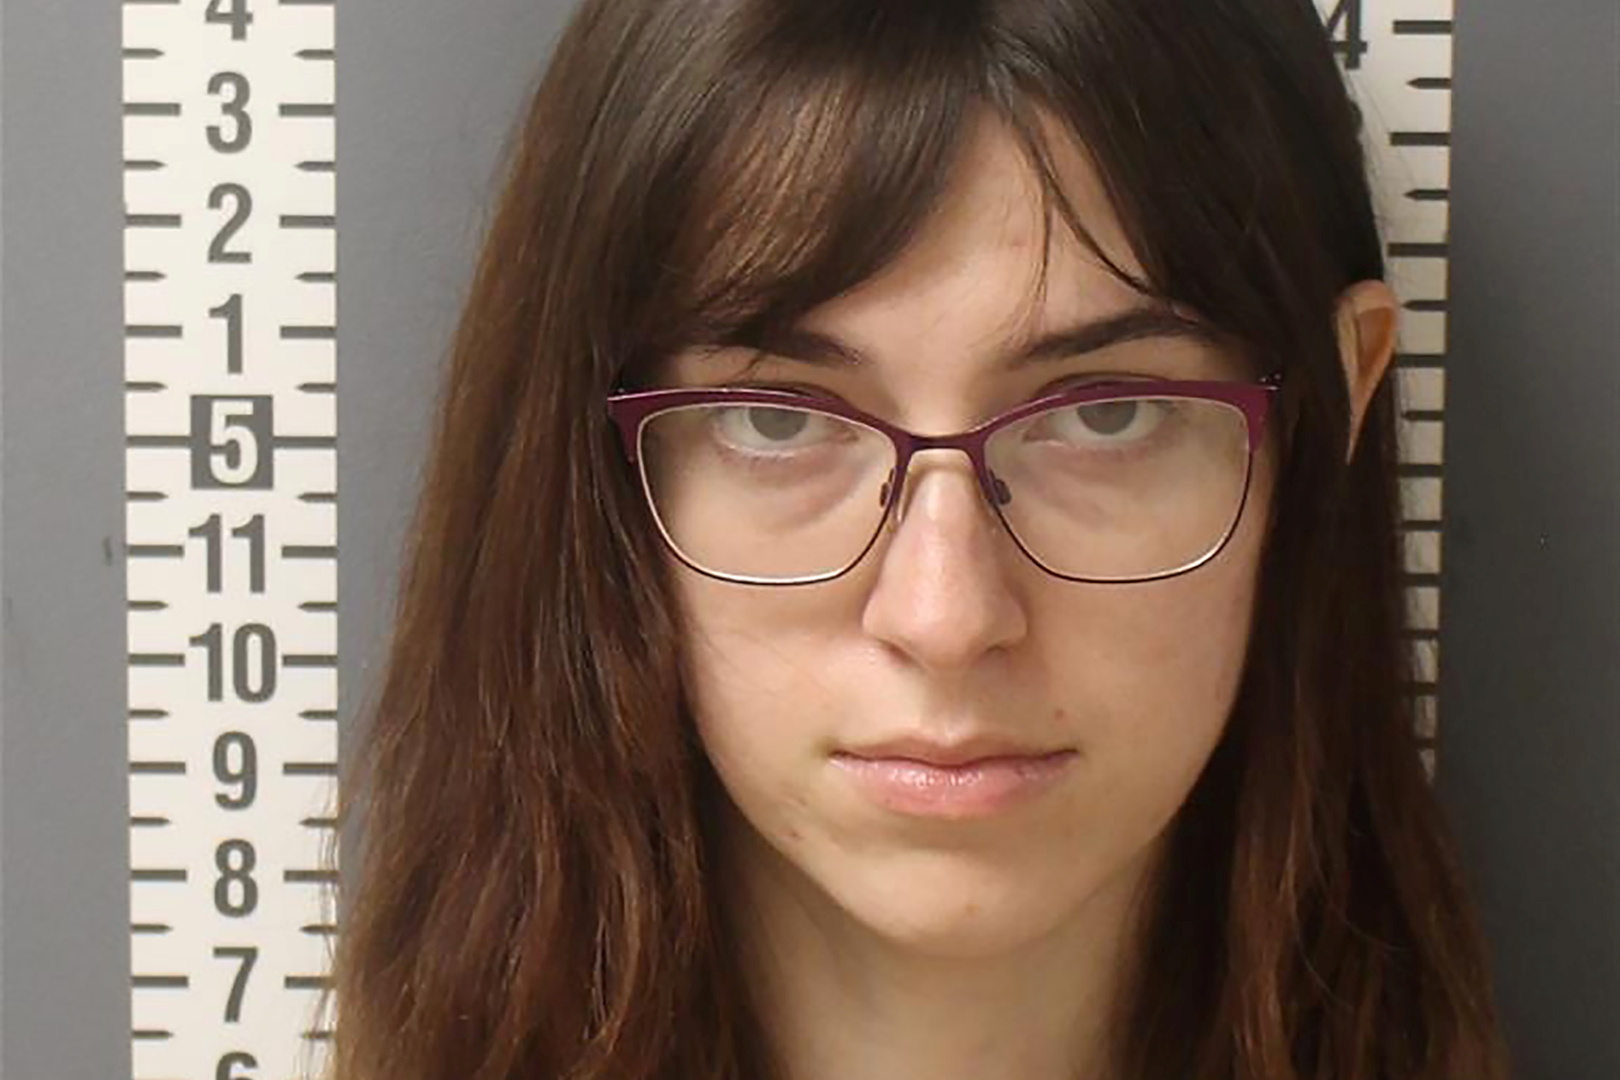 الولايات المتحدة.. إطلاق سراح امرأة متهمة بسرقة كمبيوتر بيلوسي